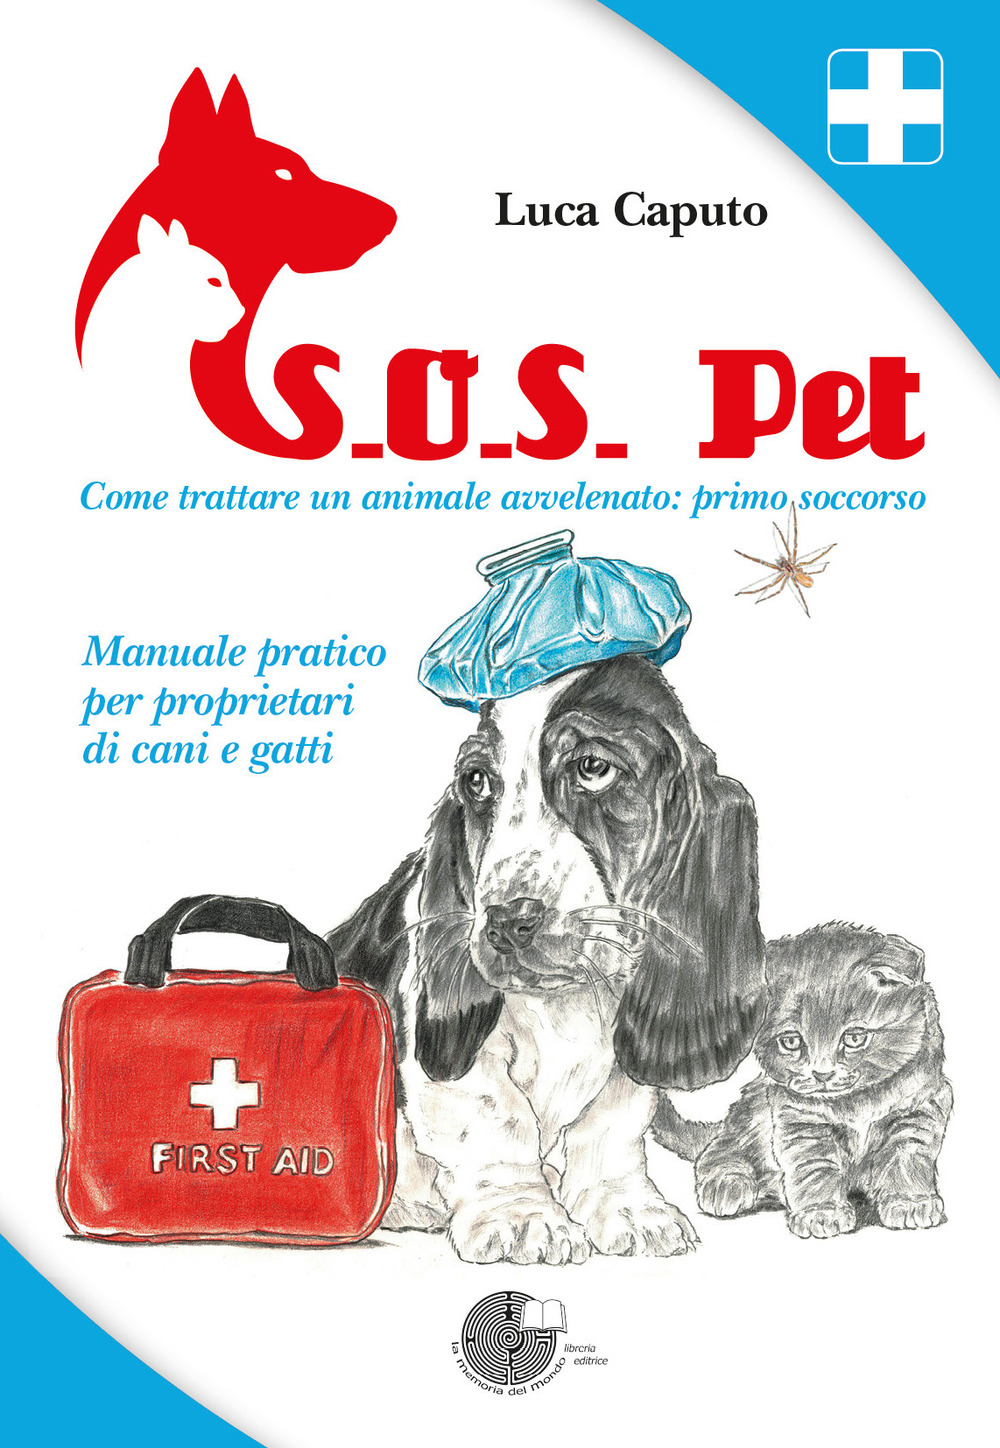 S.O.S. pet come trattare un animale avvelenato: primo soccorso. Manuale pratico per proprietari di cani e gatti